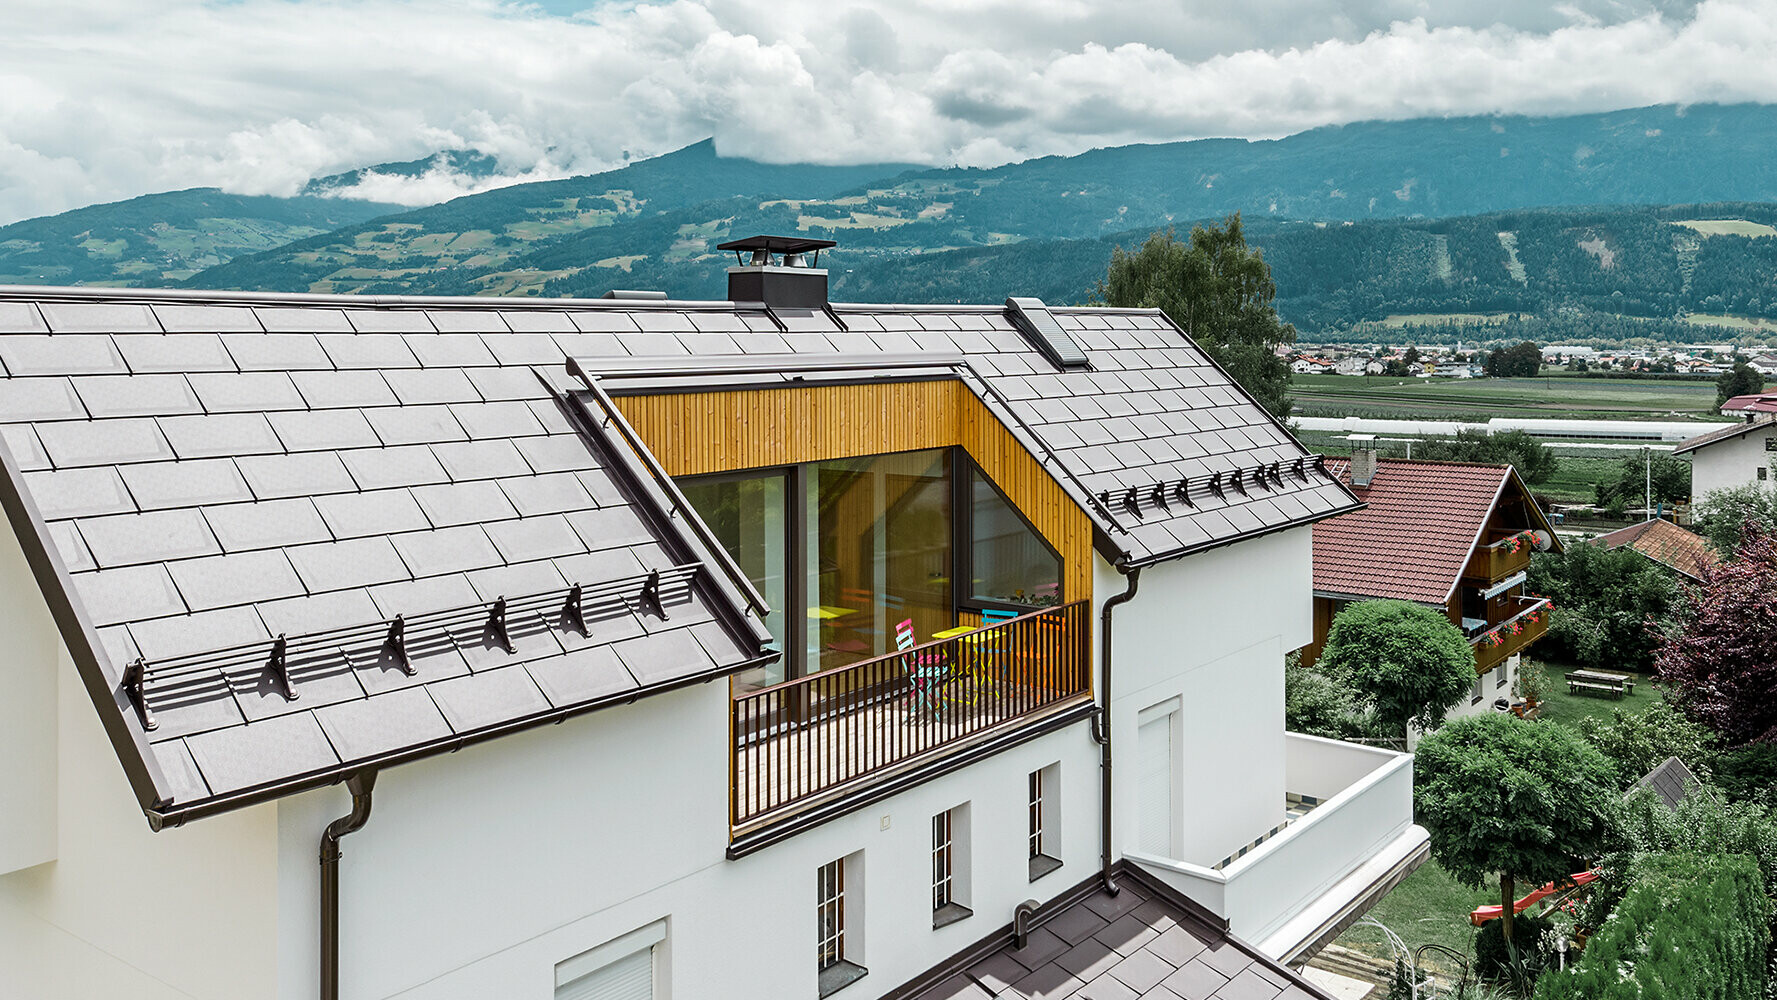 Dom mieszkalny pokryty aluminiową dachówką R.16 PREFA. Idealnie komponują się z dużym balkonem w kolorze orzechowym oraz tynkową elewacją. 